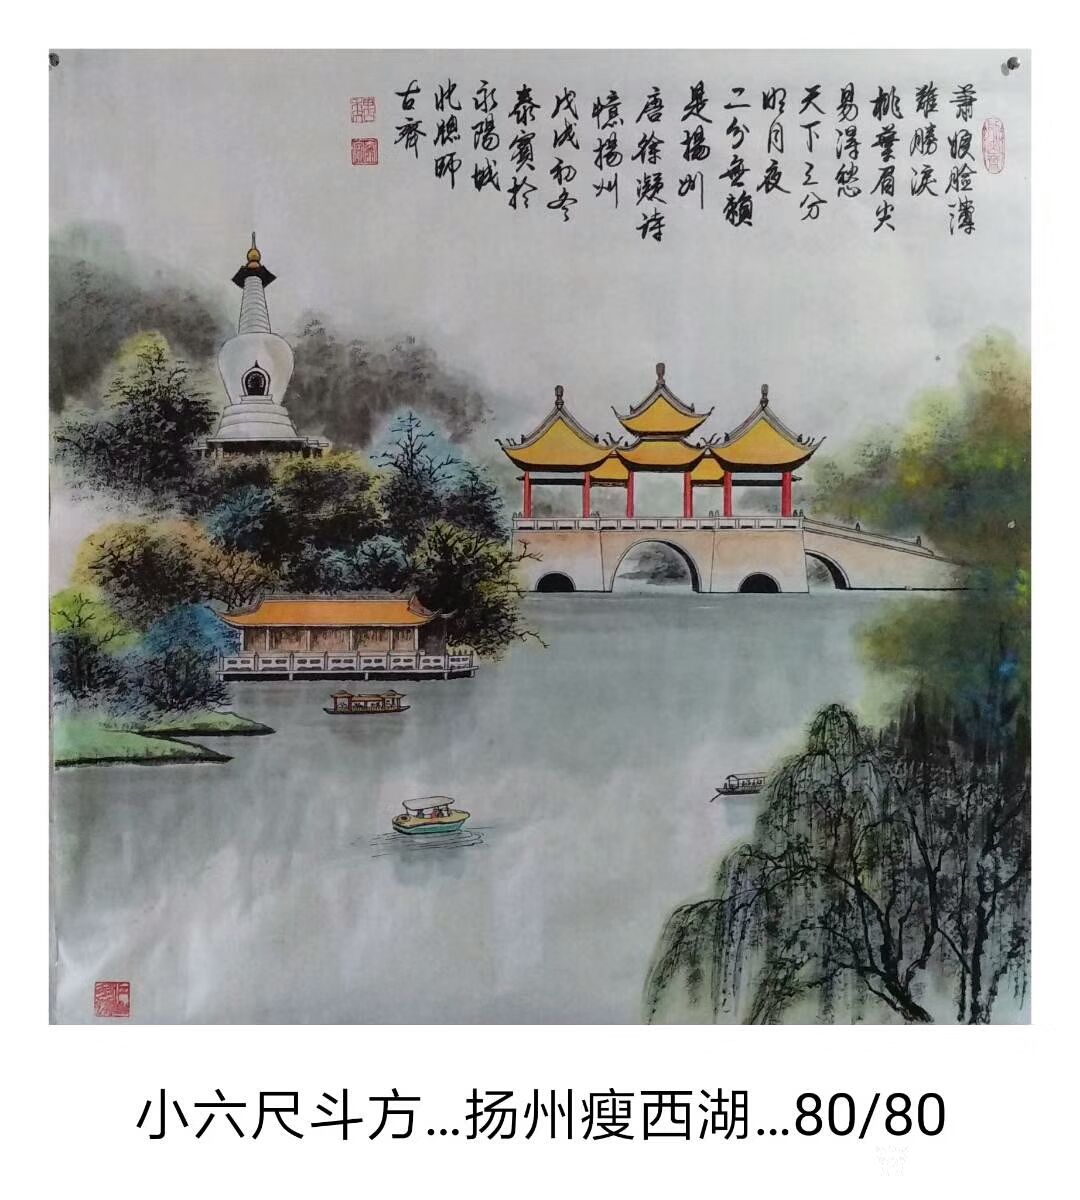 艺术家邵西安收藏:国画山水画《雪景》,尺寸四尺竖幅68x138cm,《扬州